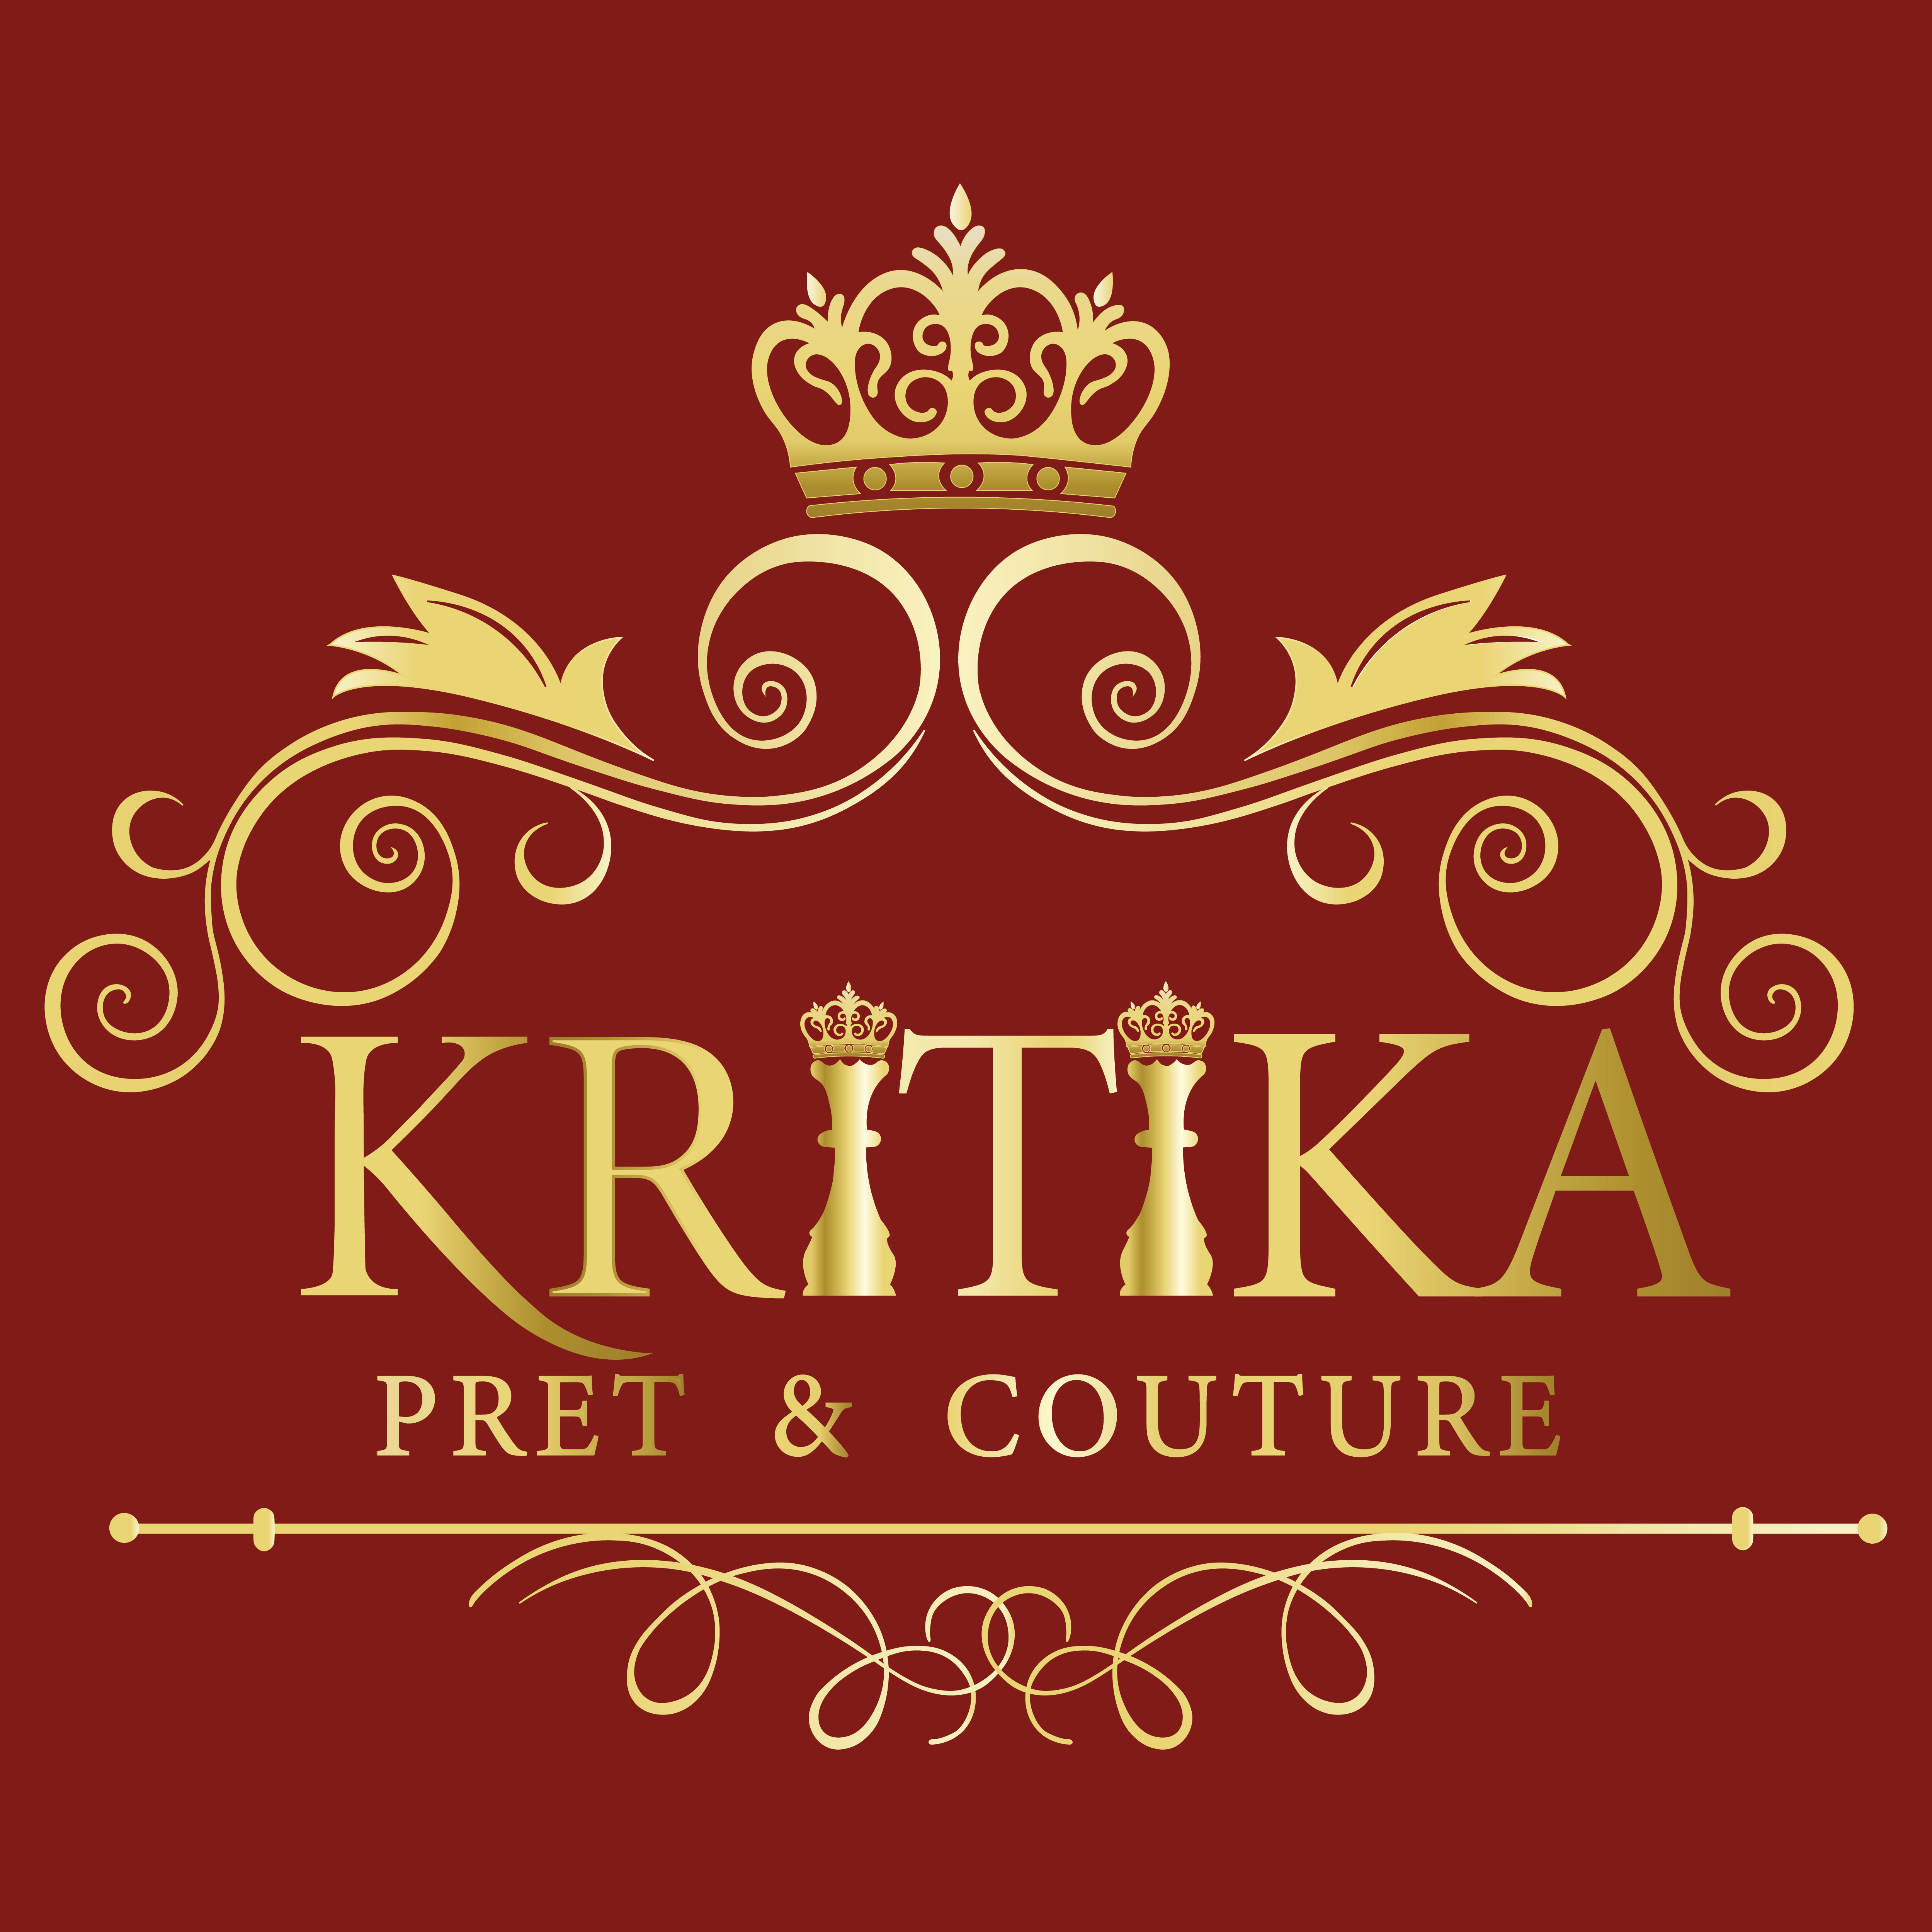 Kritika Pret & Couture Designs